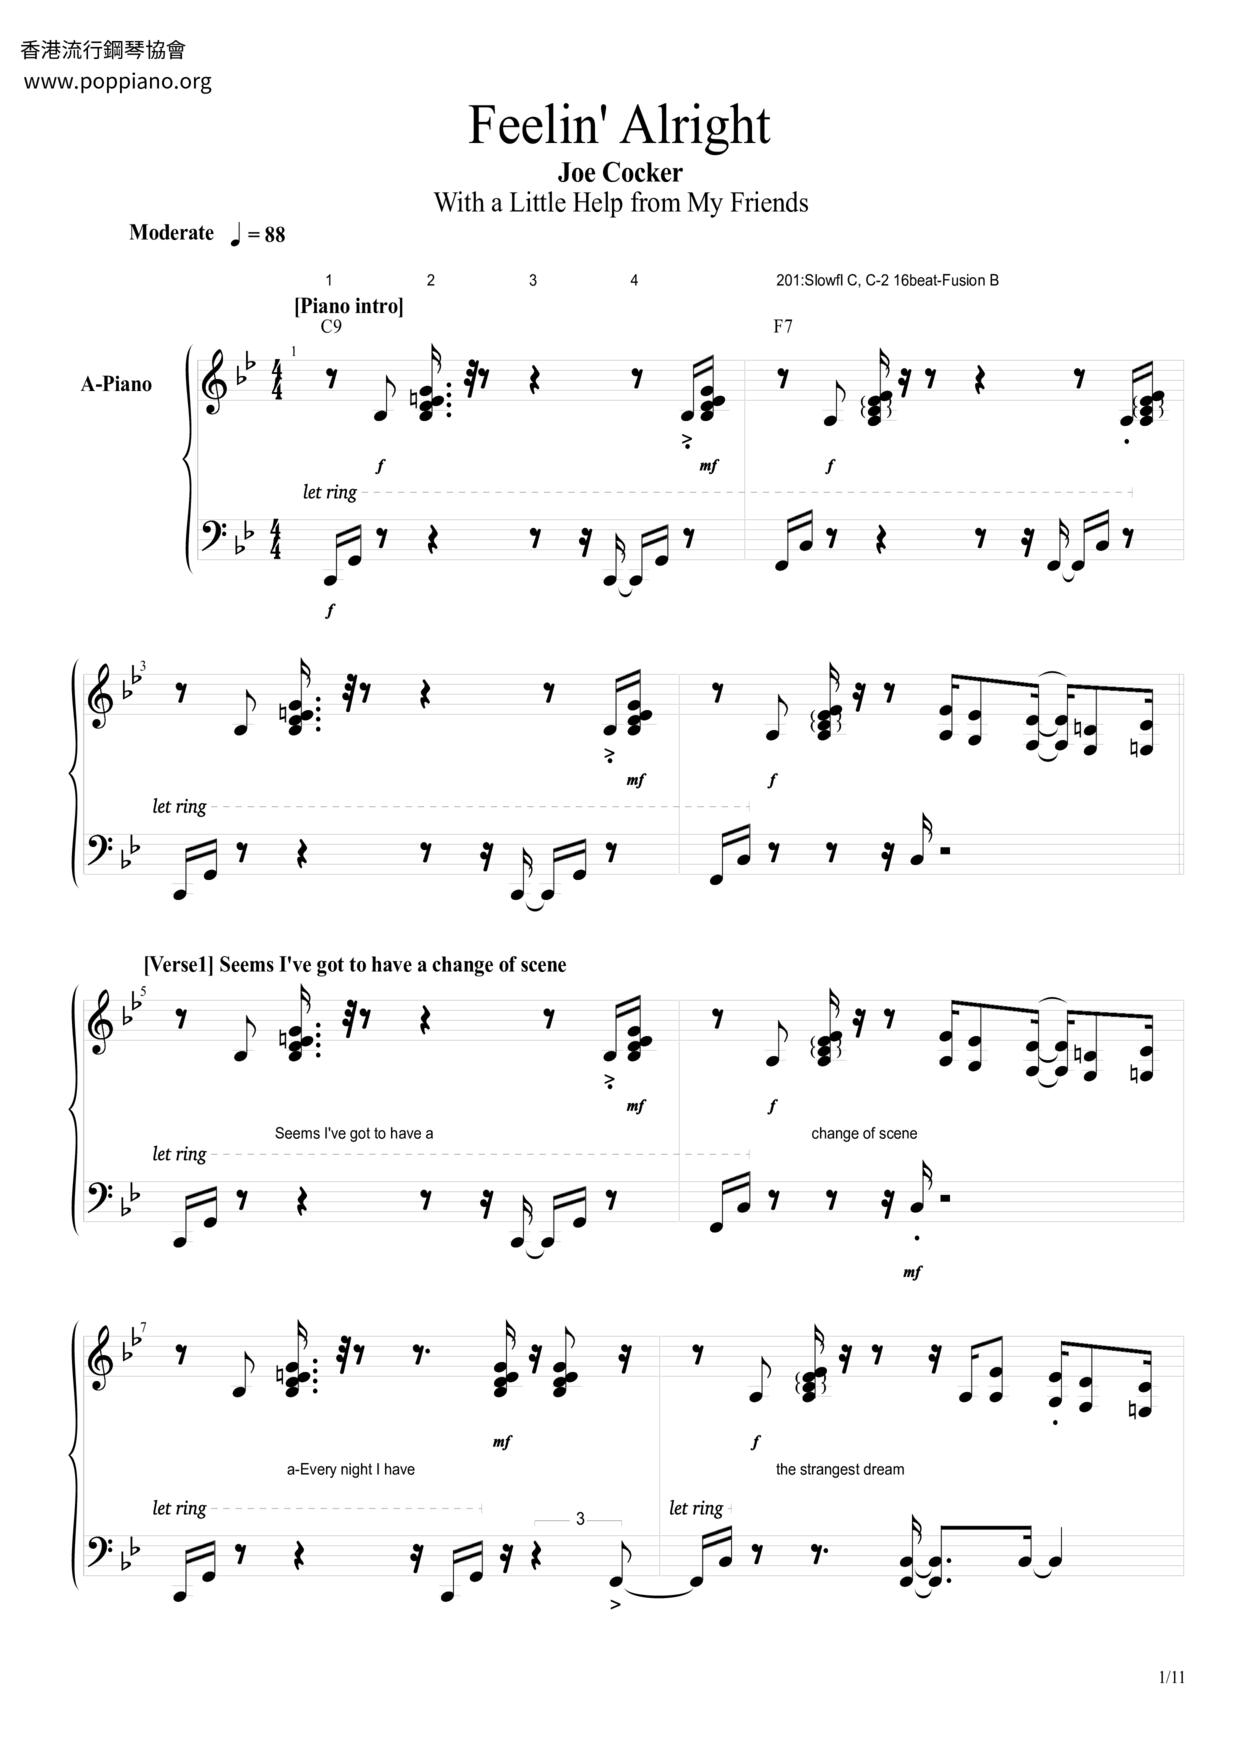 Joe Cocker-Feelin' Alright Sheet Music pdf, - Free Score Download ★